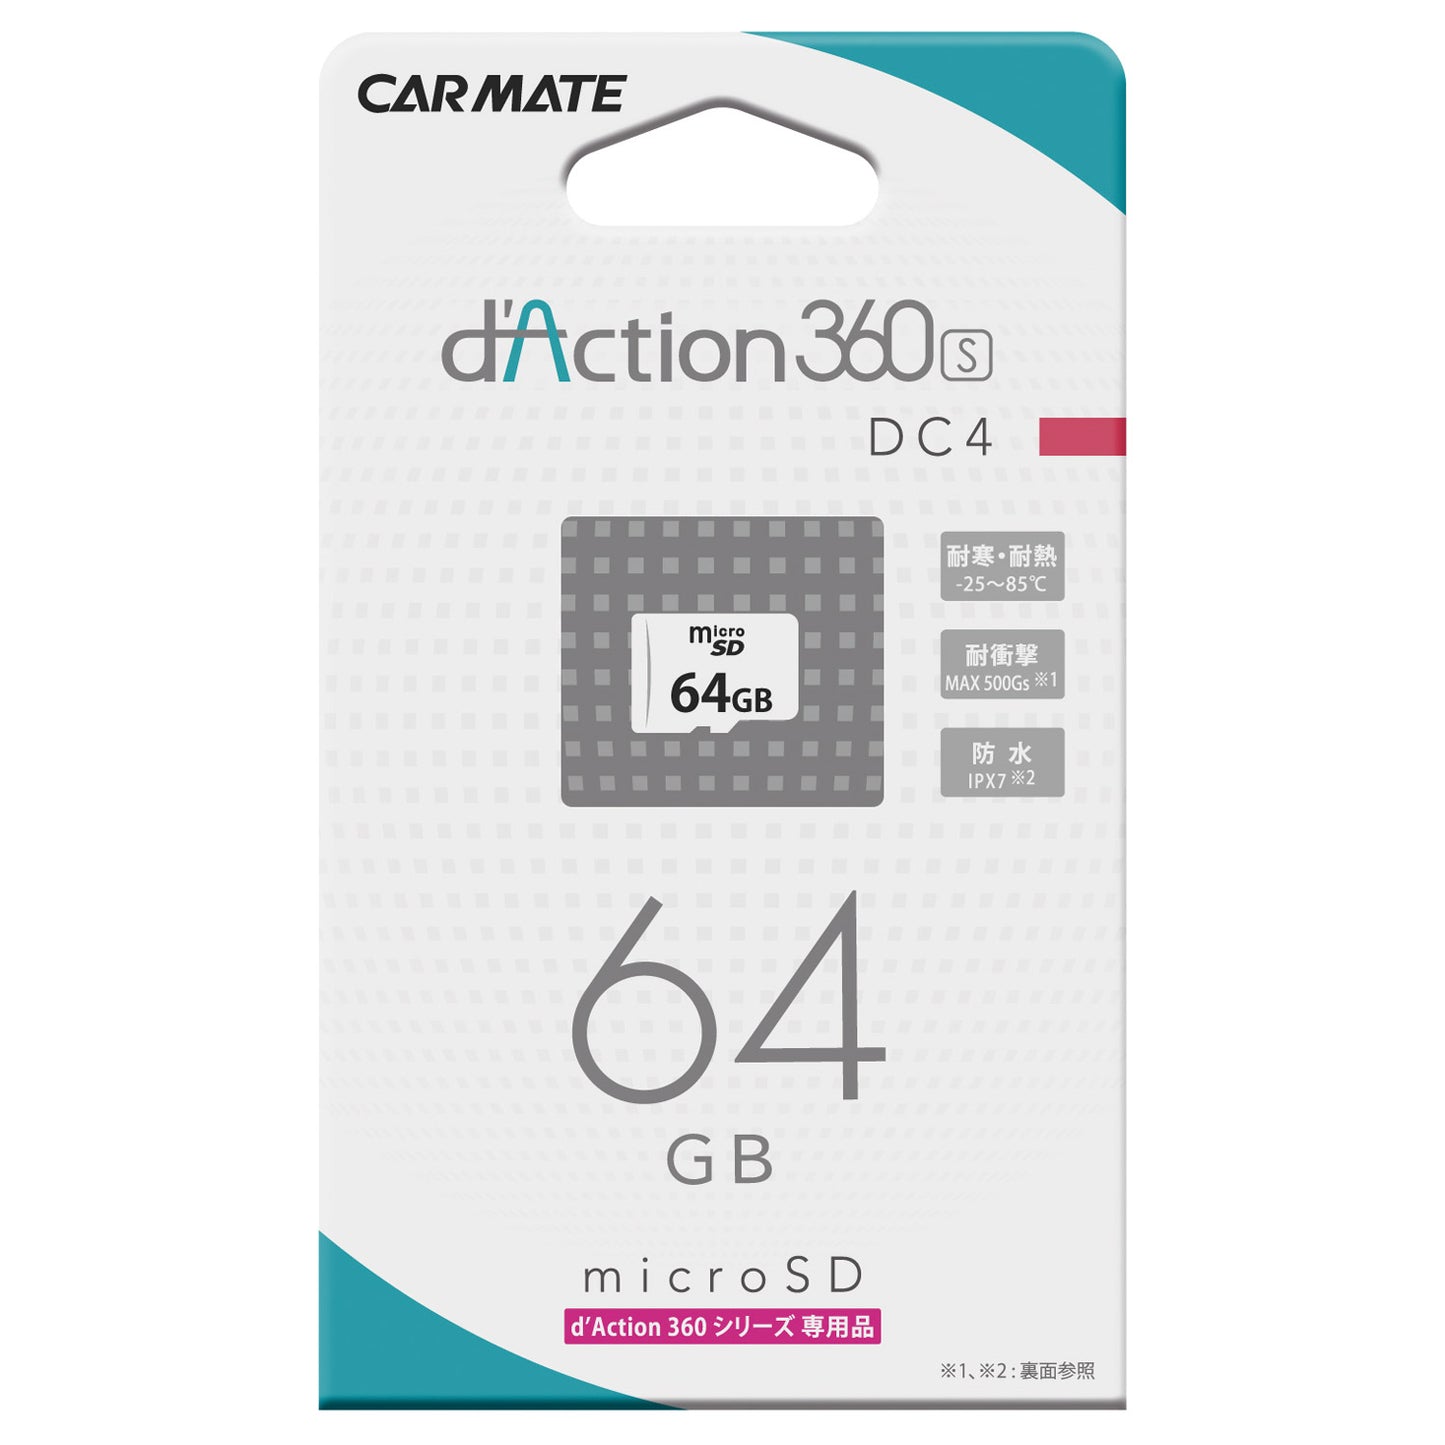 DC4A 64GB Micro SD Card